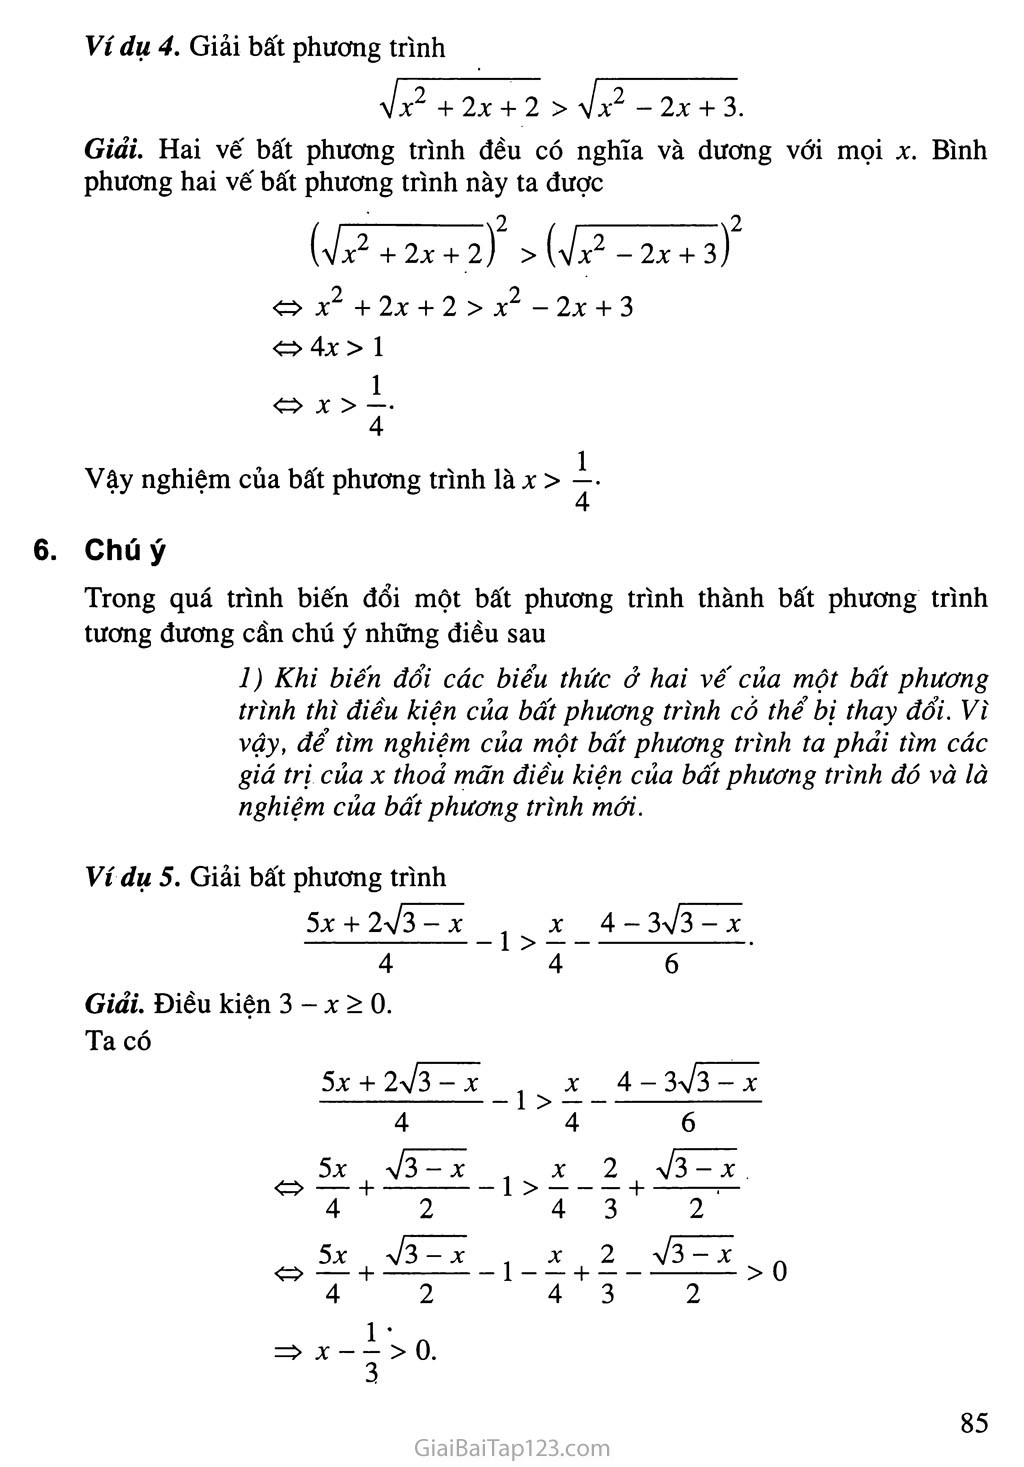 Bài 2. Bất phương trình và hệ bất phương trình một ẩn trang 6